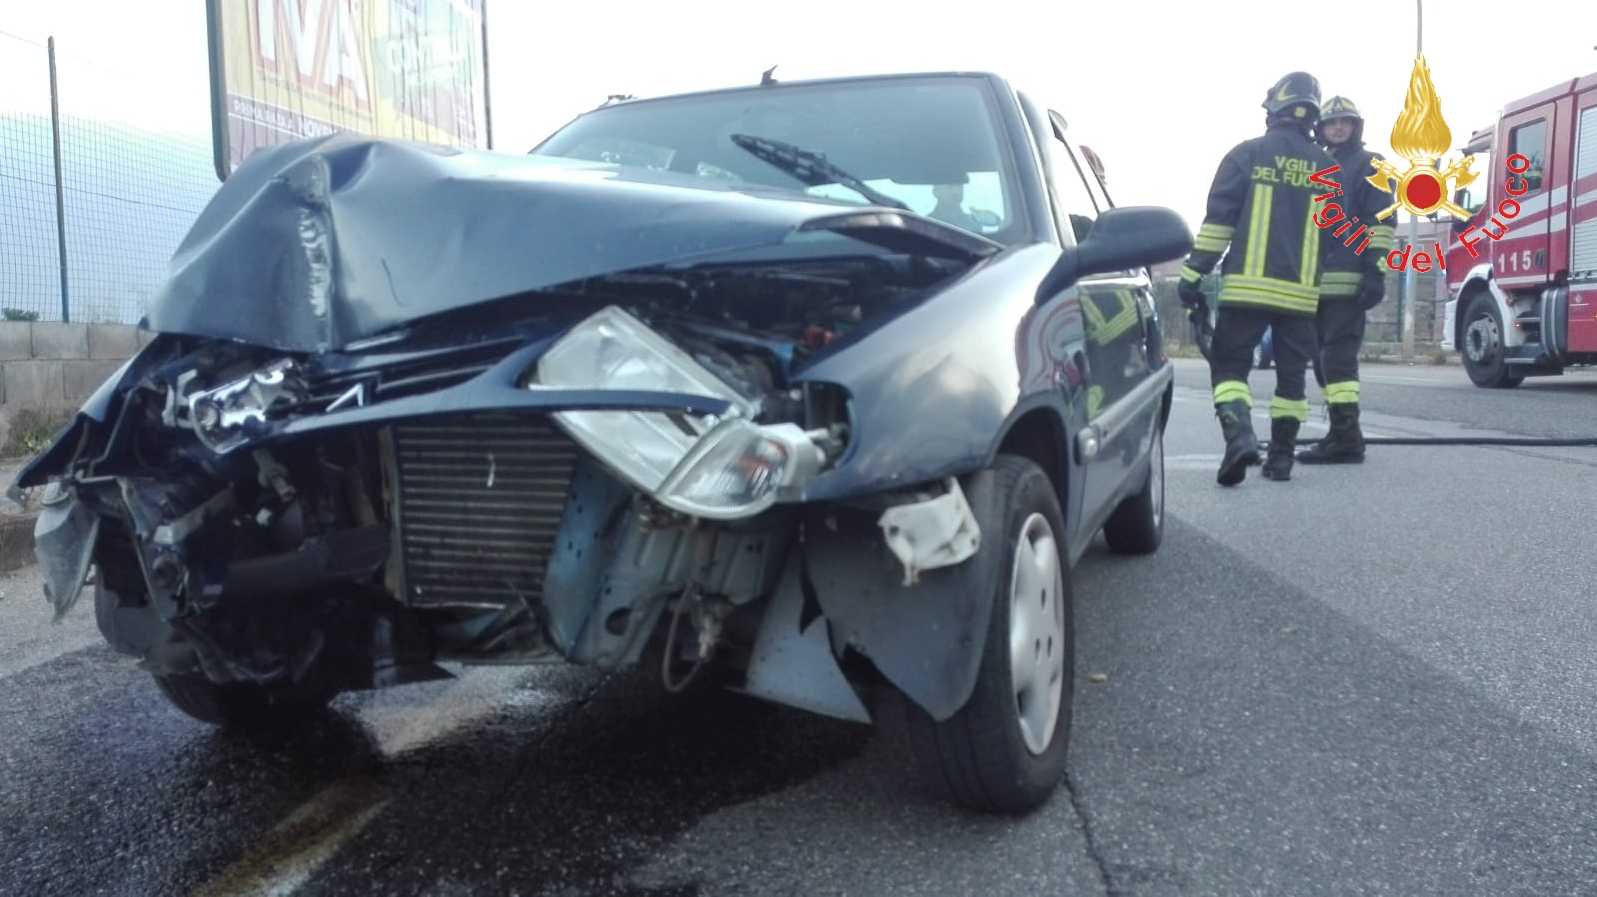 Incidente stradale: Auto sbanda e finisce contro un palo della luce intervento dei VVF e suem118